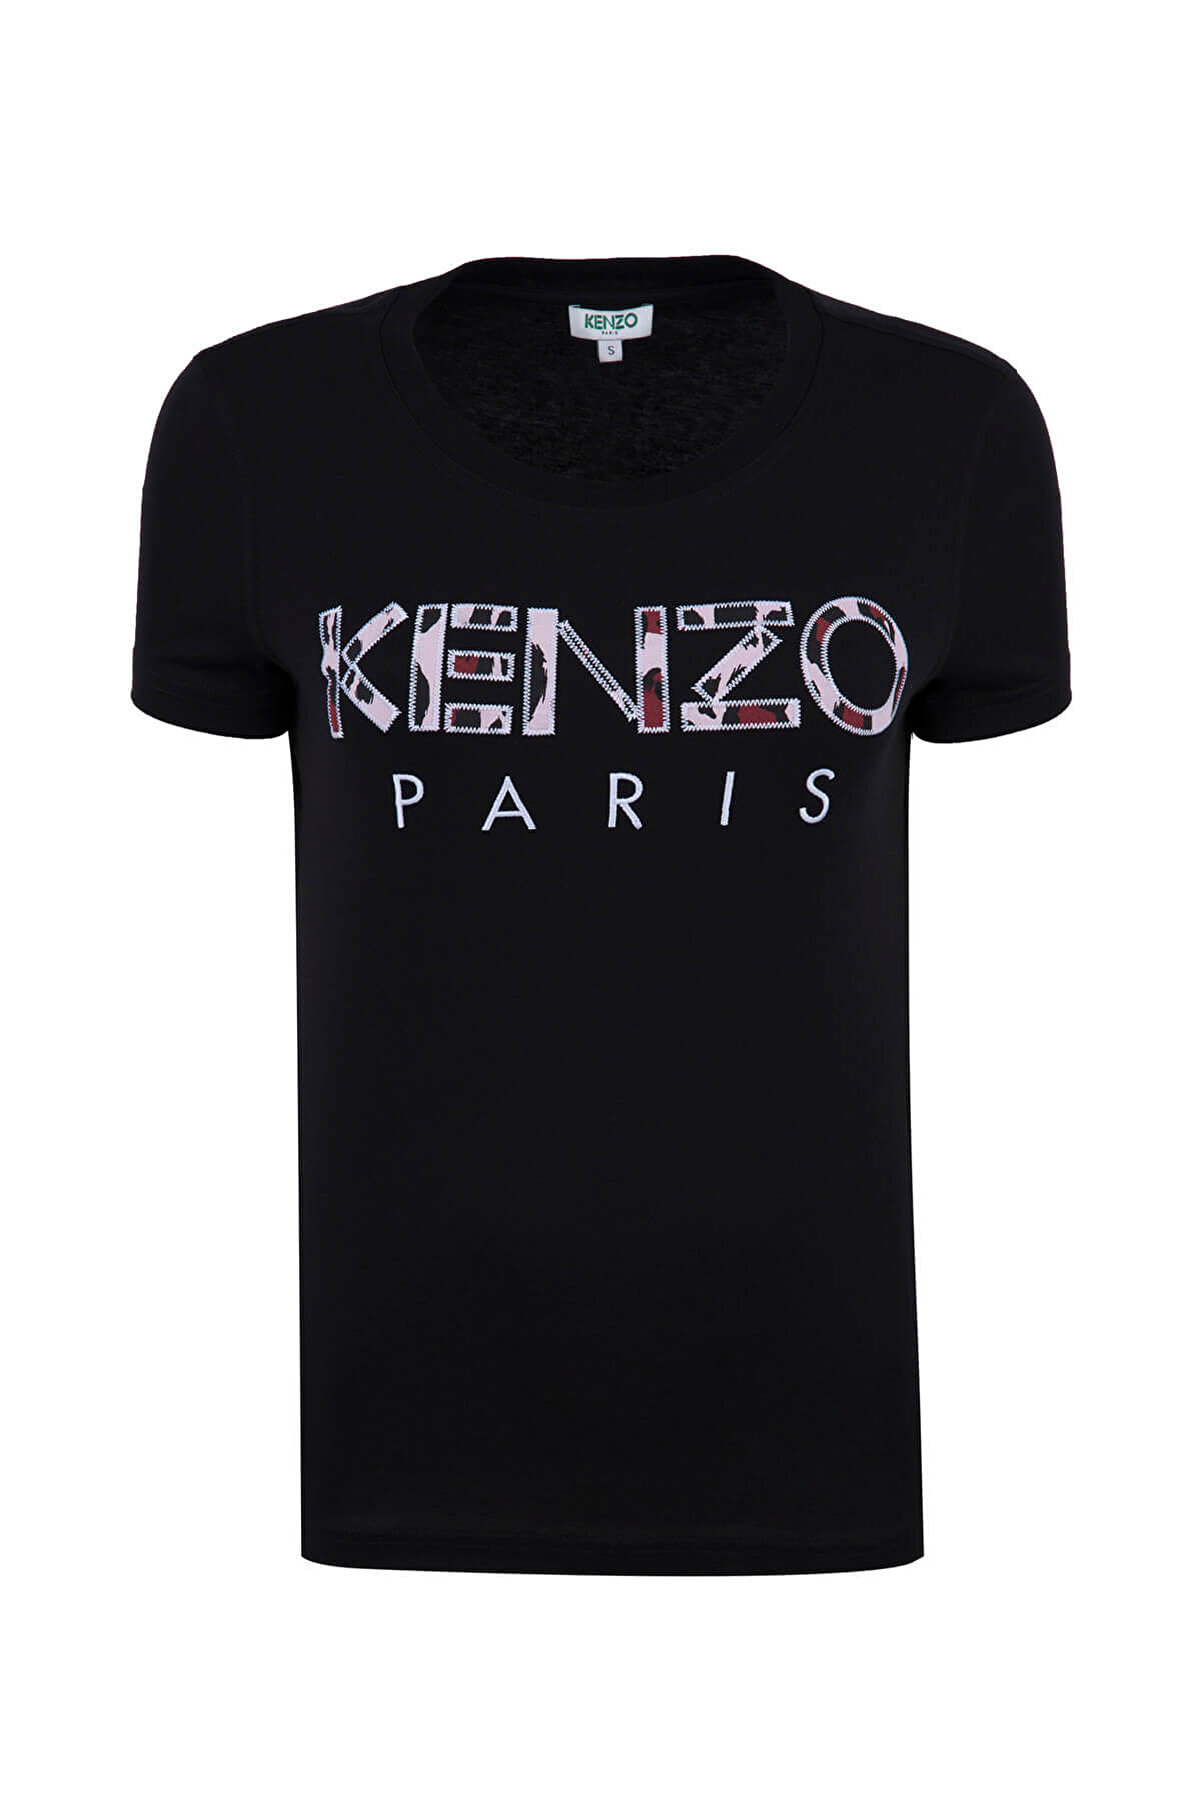 Kenzo Kadın Siyah T-Shirt F86 2Ts721 993 99